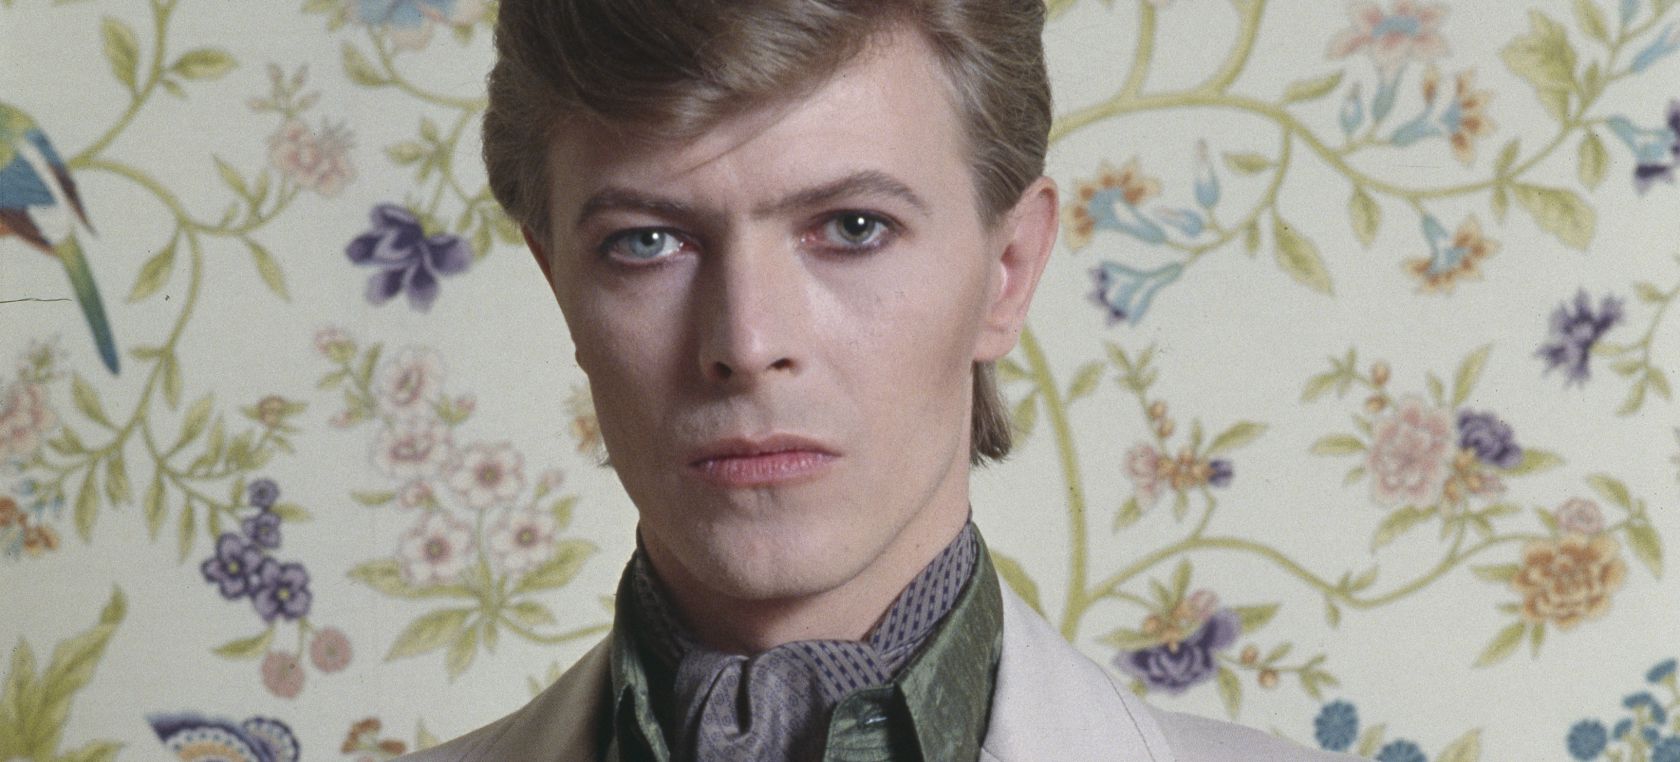 David Bowie retratado en 1977